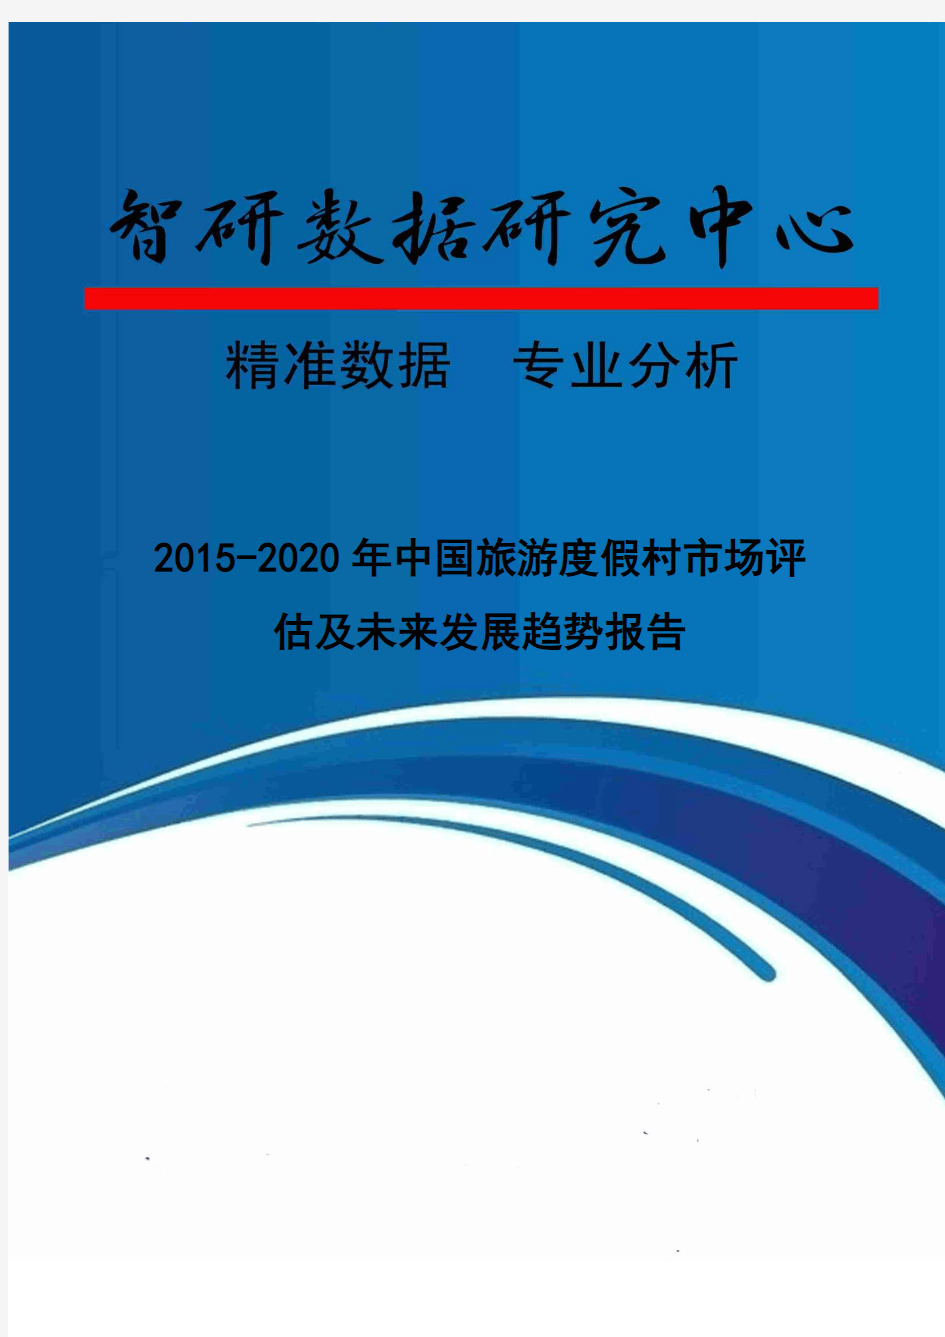 2015-2020年中国旅游度假村市场评估及未来发展趋势报告